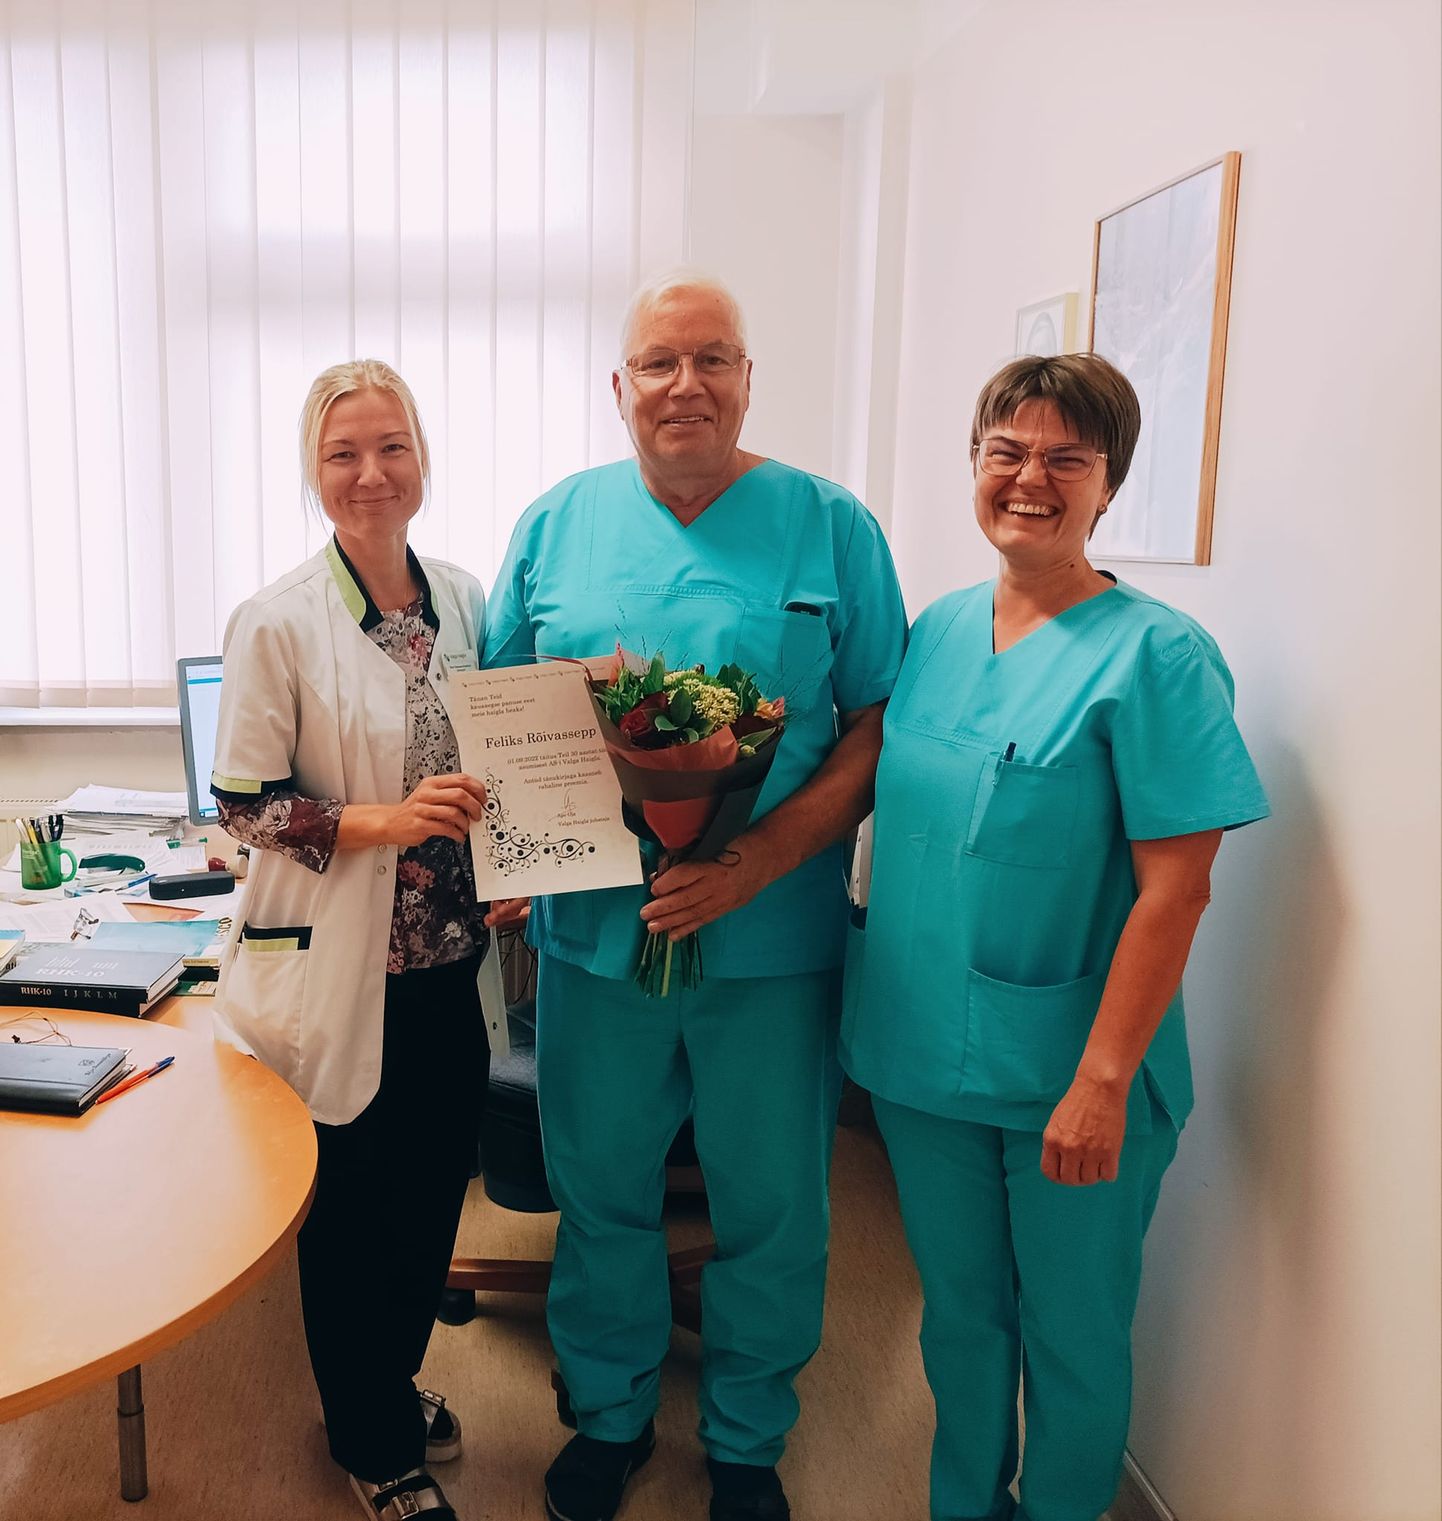 Doktor Feliks Rõivassepal täitus Valga haiglas töö alustamisest 30 aastat. Fotol koos õendusjuhi Tiina Tuhkanen-Kostrova (vasakul) ja ravijuhi Neve Vendtiga.